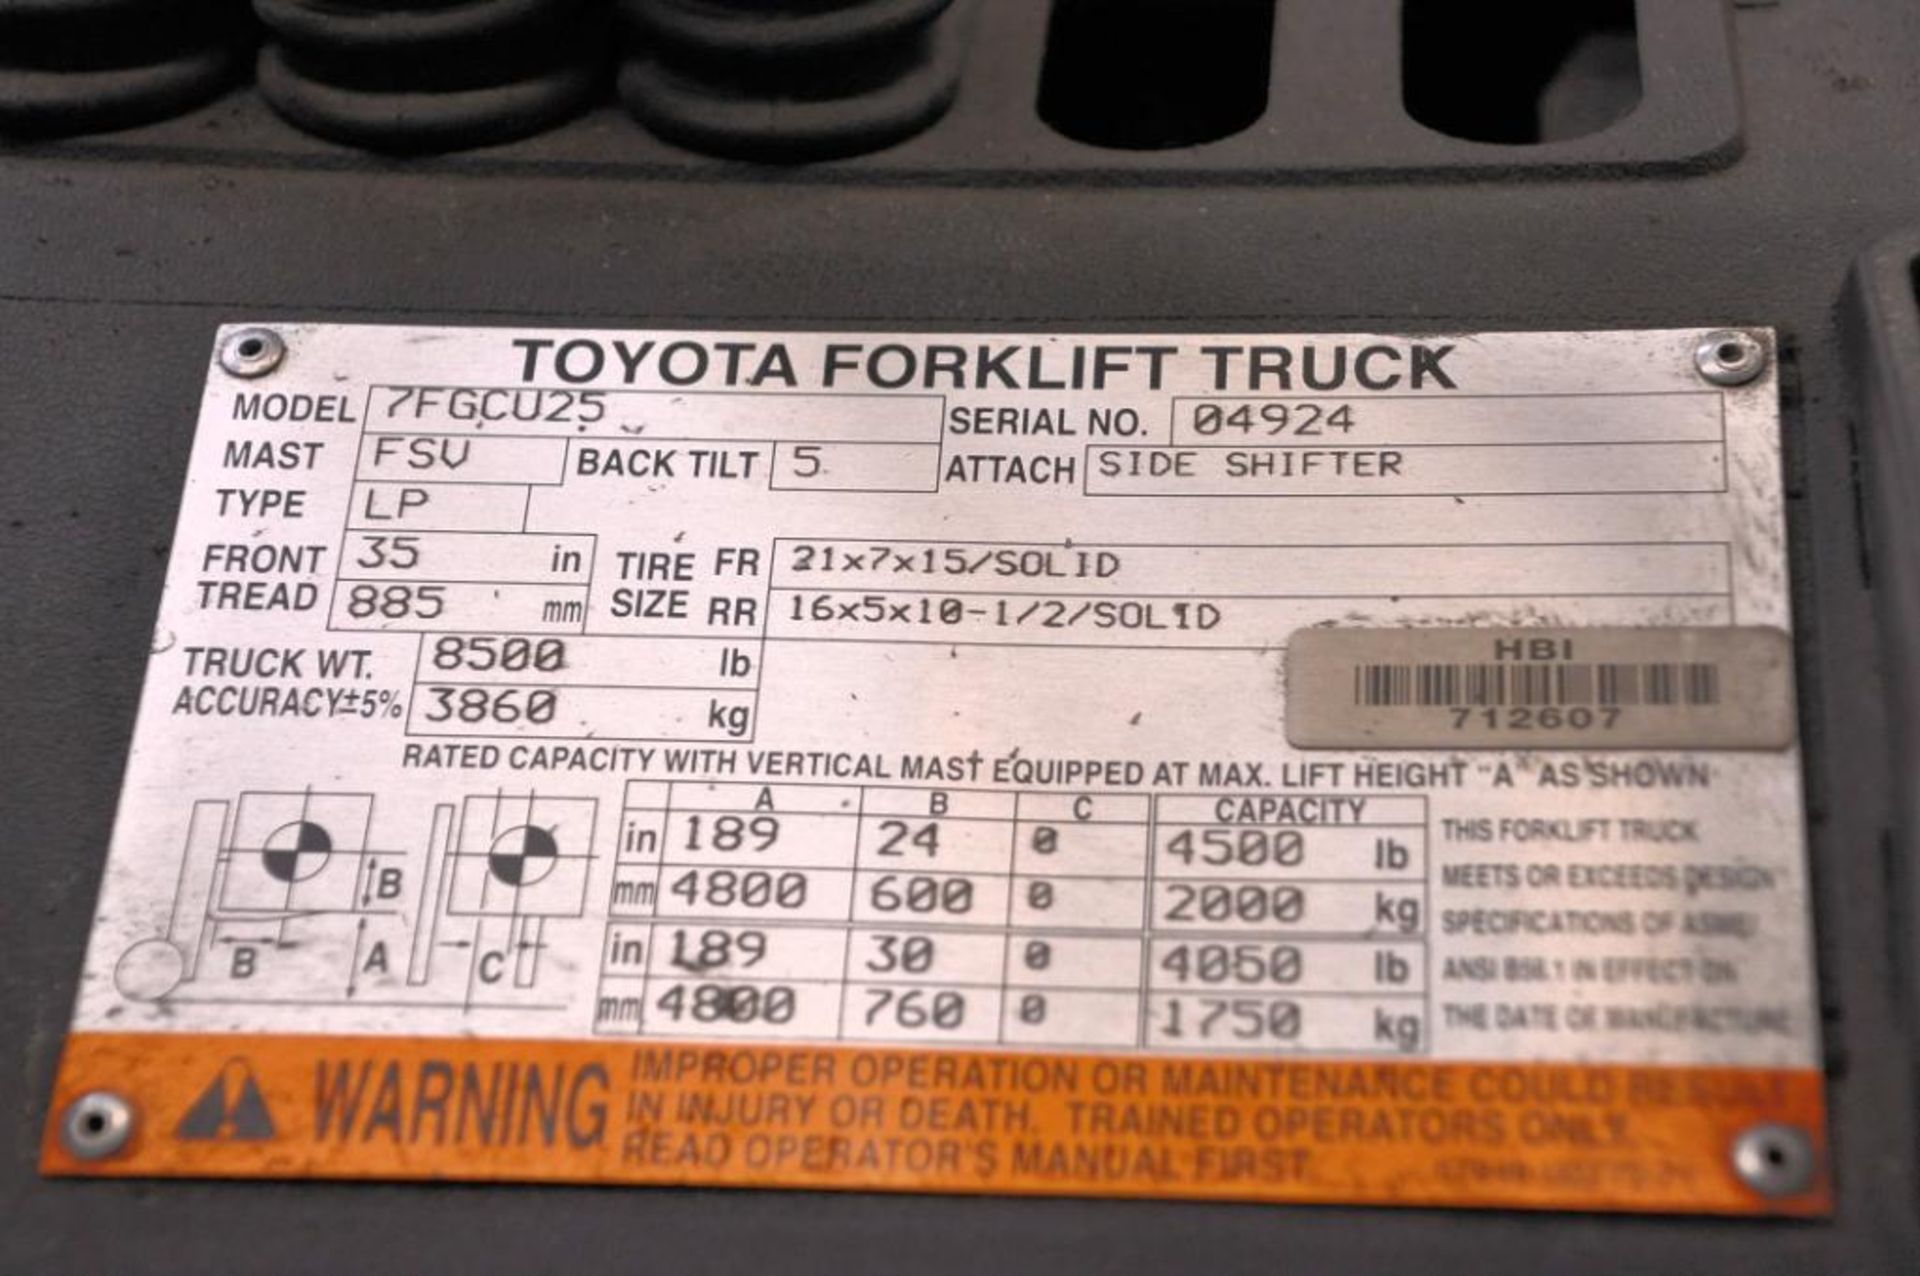 Toyota Model 7FGCU25 4,500-lb. Capacity LP-Gas Forklift Truck, S/N: 04924 - Image 5 of 5